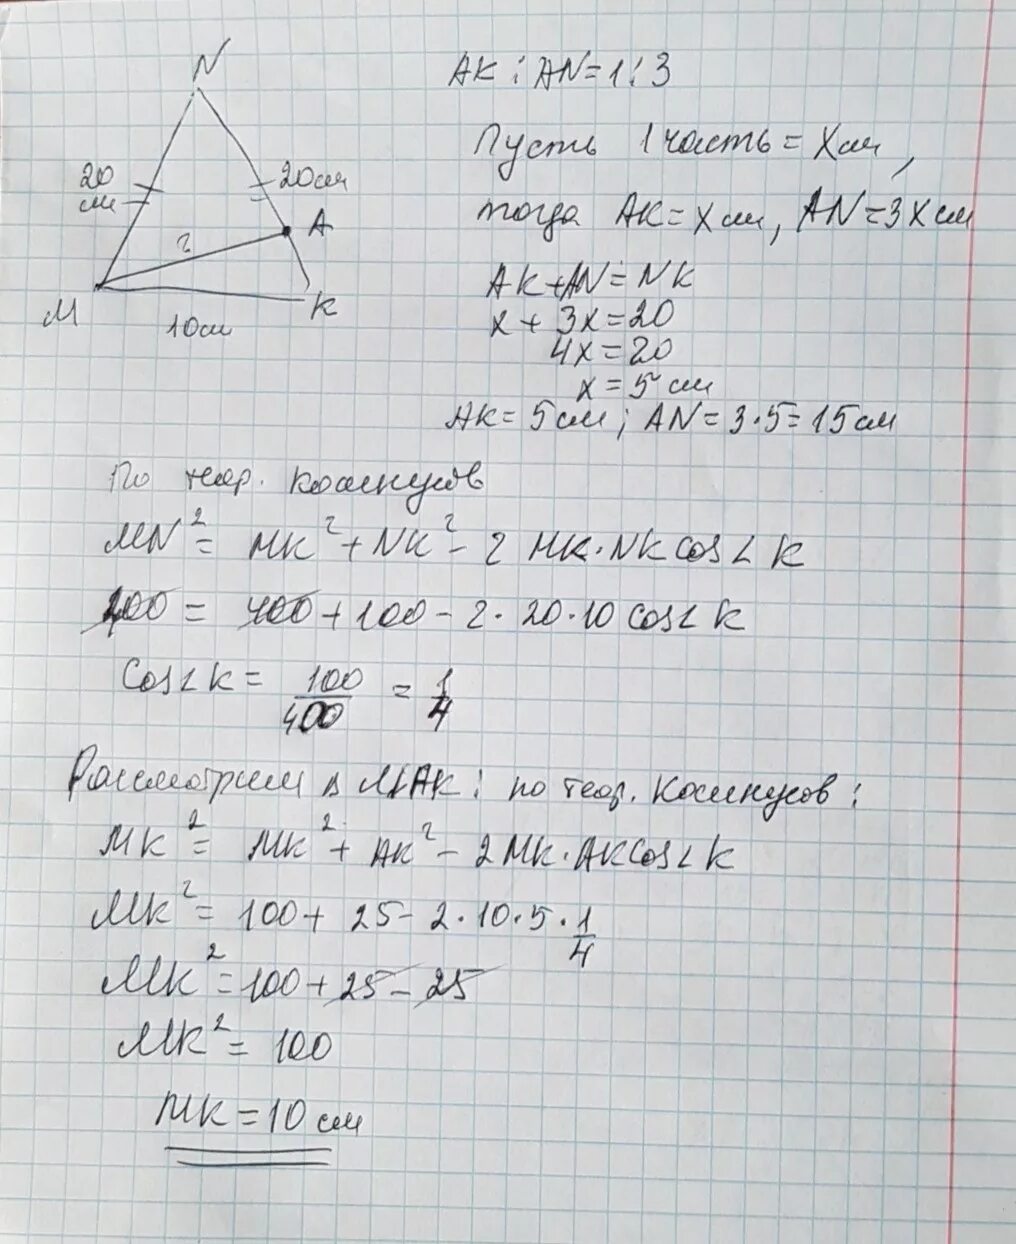 Дано мн равно. В равнобедренном треугольнике MNK С основанием MK. В треугольнике MNK MN= 10 см. В равнобедренном треугольнике МНК С основанием МК равным 10 см. В равнобедренном треугольнике МНК С основанием МК.